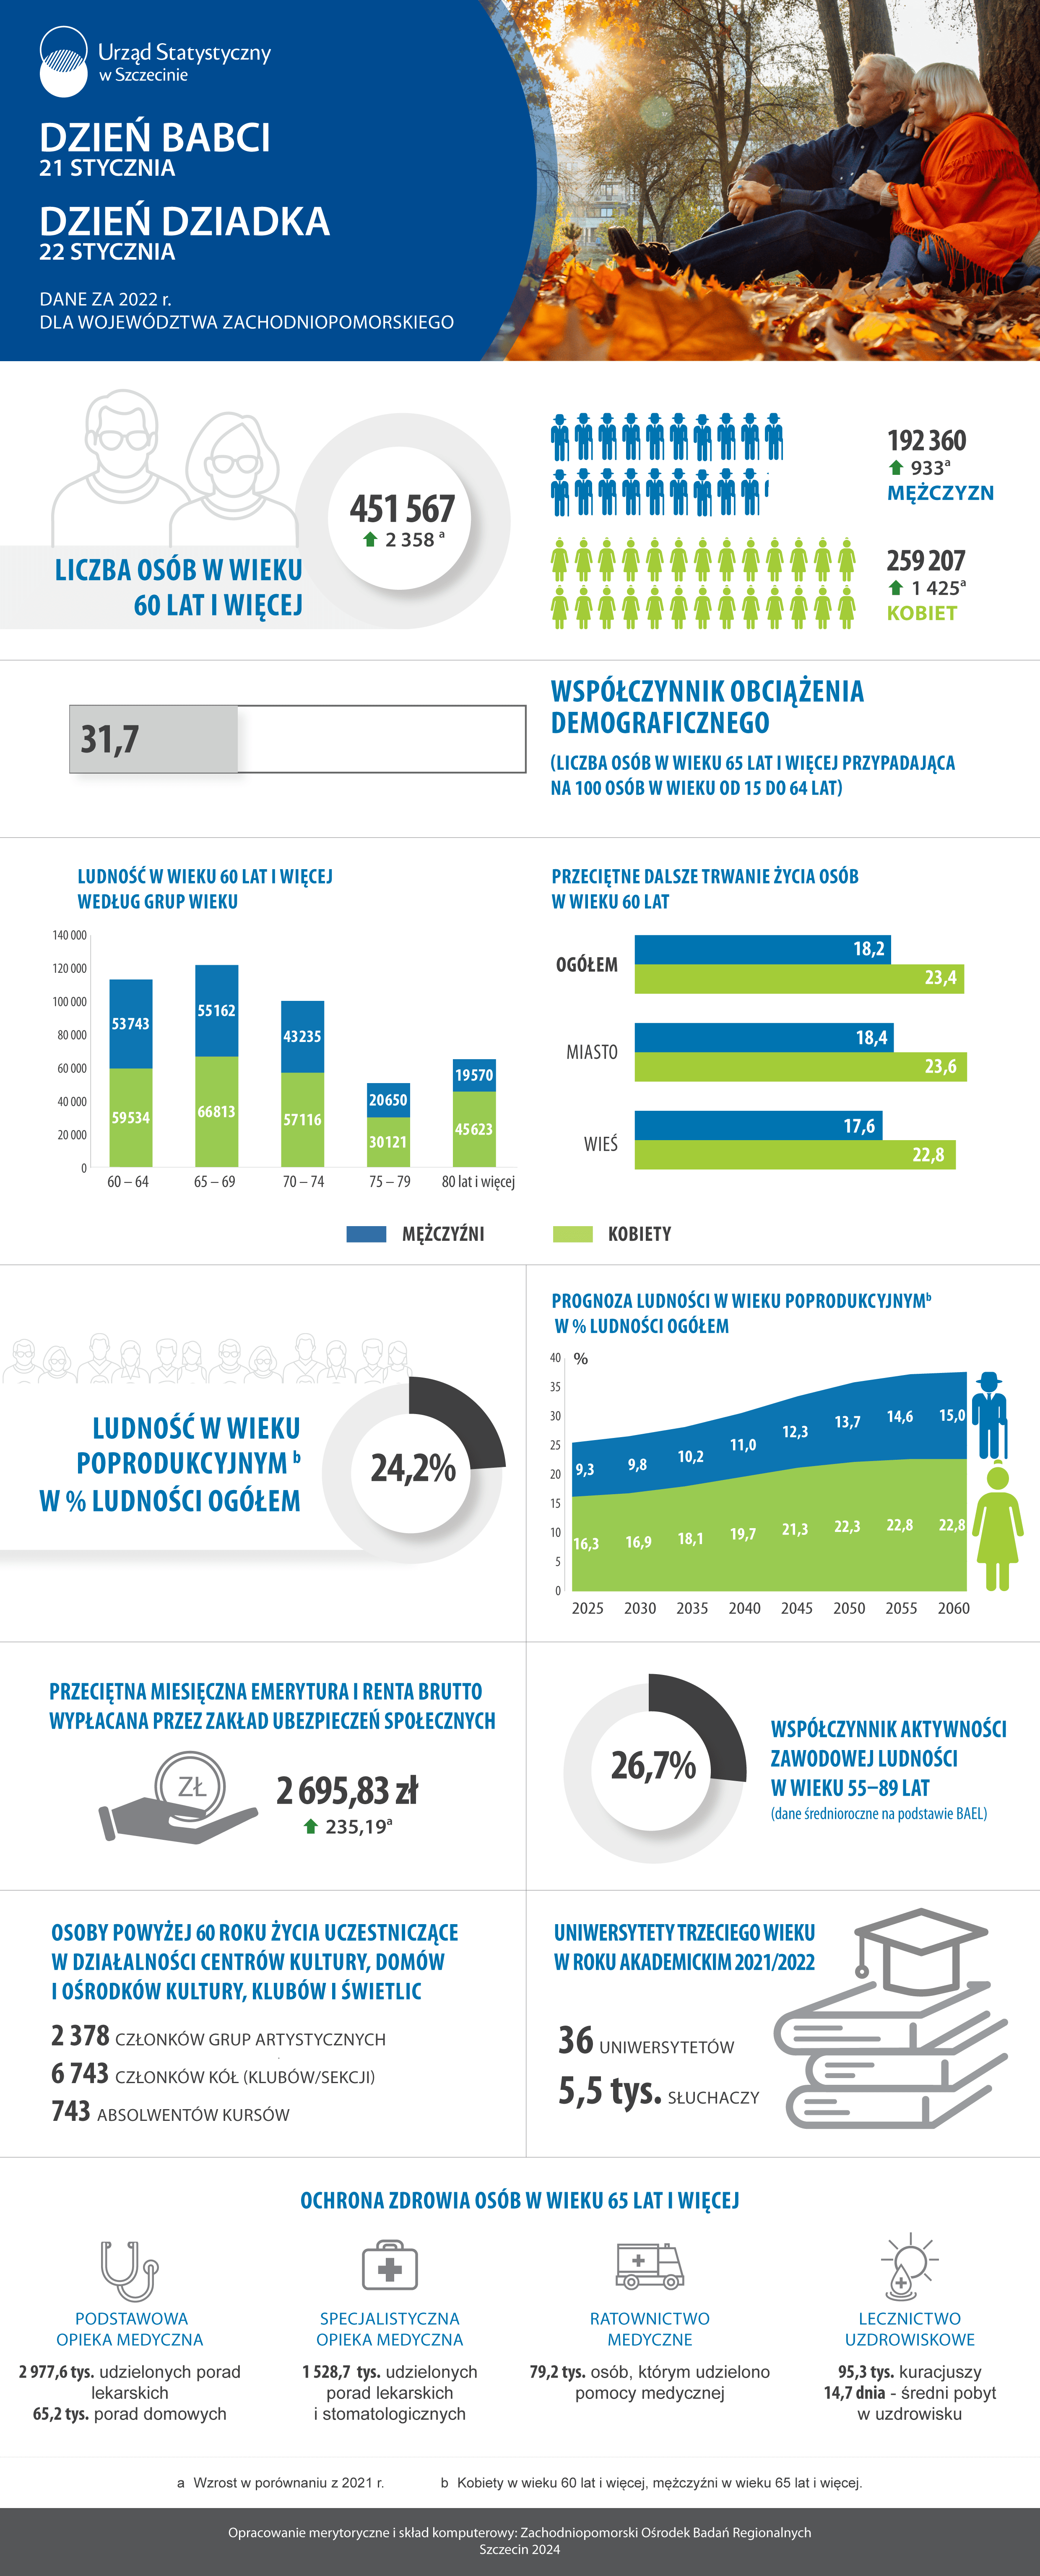 Infografika z okazji Dnia Babci i Dnia Dziadka przedstawiająca dane za 2022 rok dla wojewodztwa zachodniopomorskiego - Urząd Statystyczny w Szczecinie